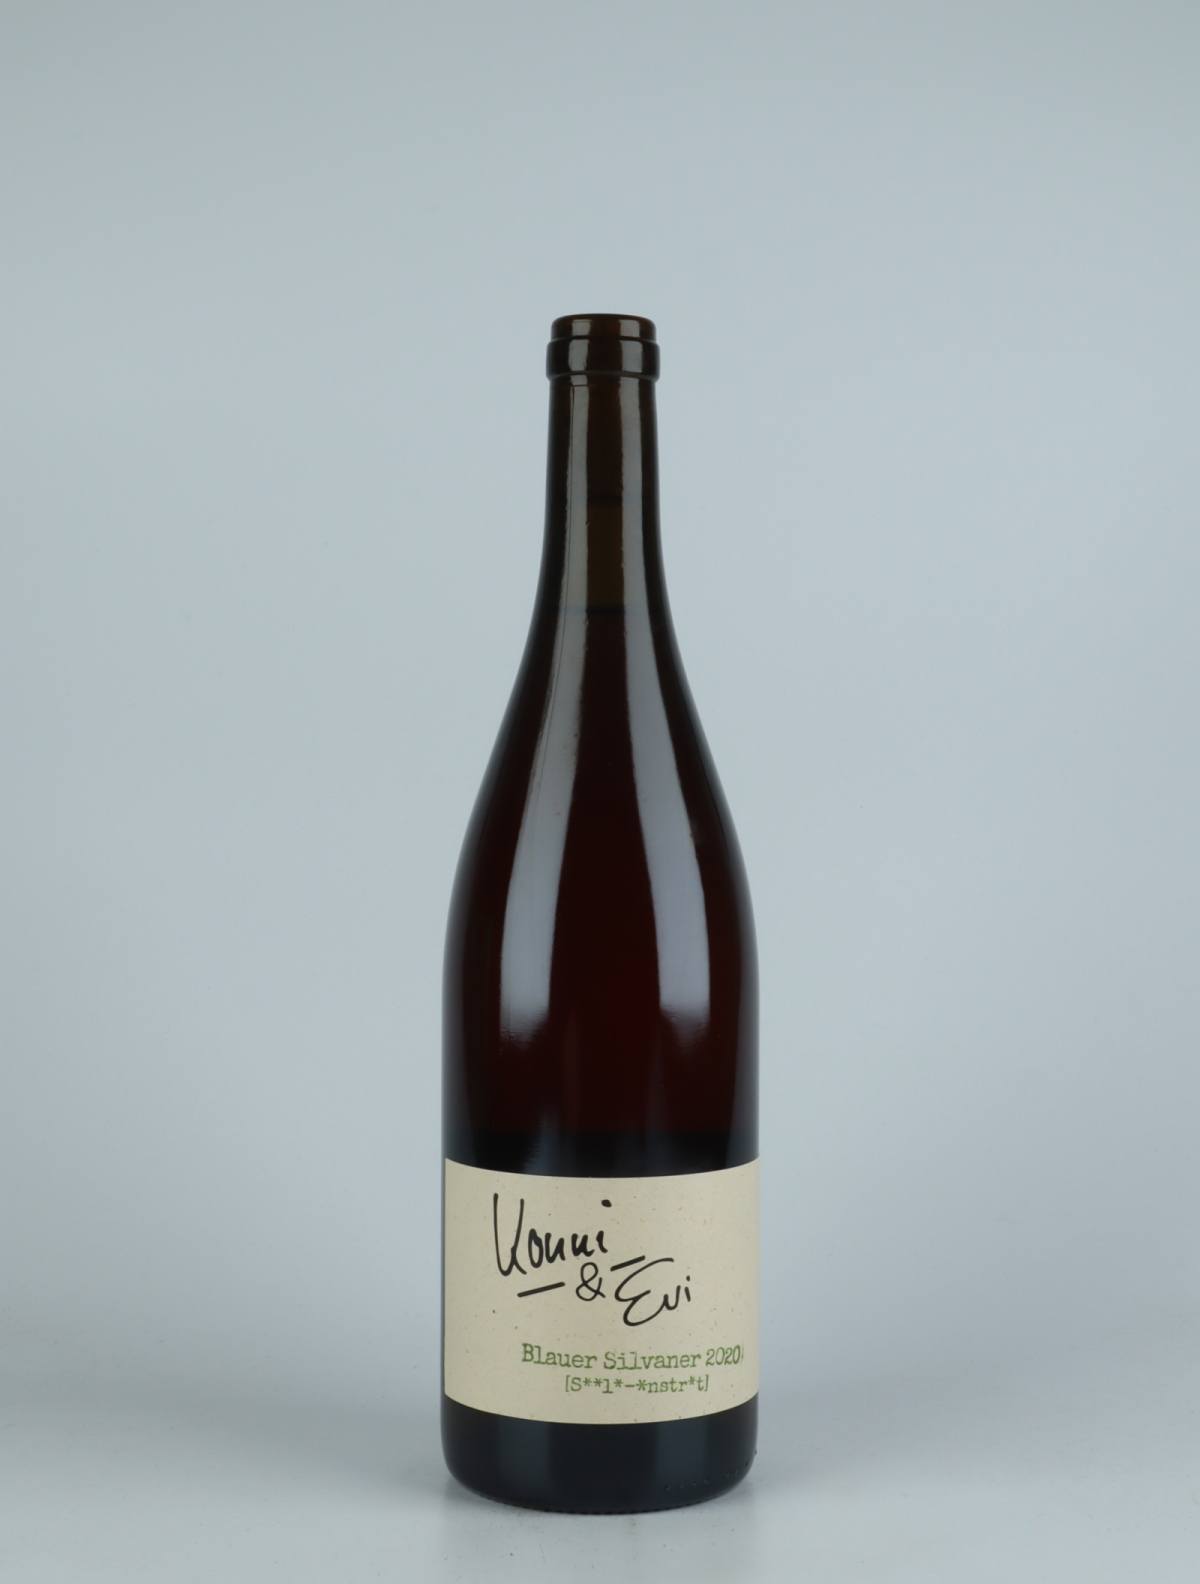 En flaske 2020 Blauer Silvaner Orange vin fra Konni & Evi, Saale-Unstrut i Tyskland